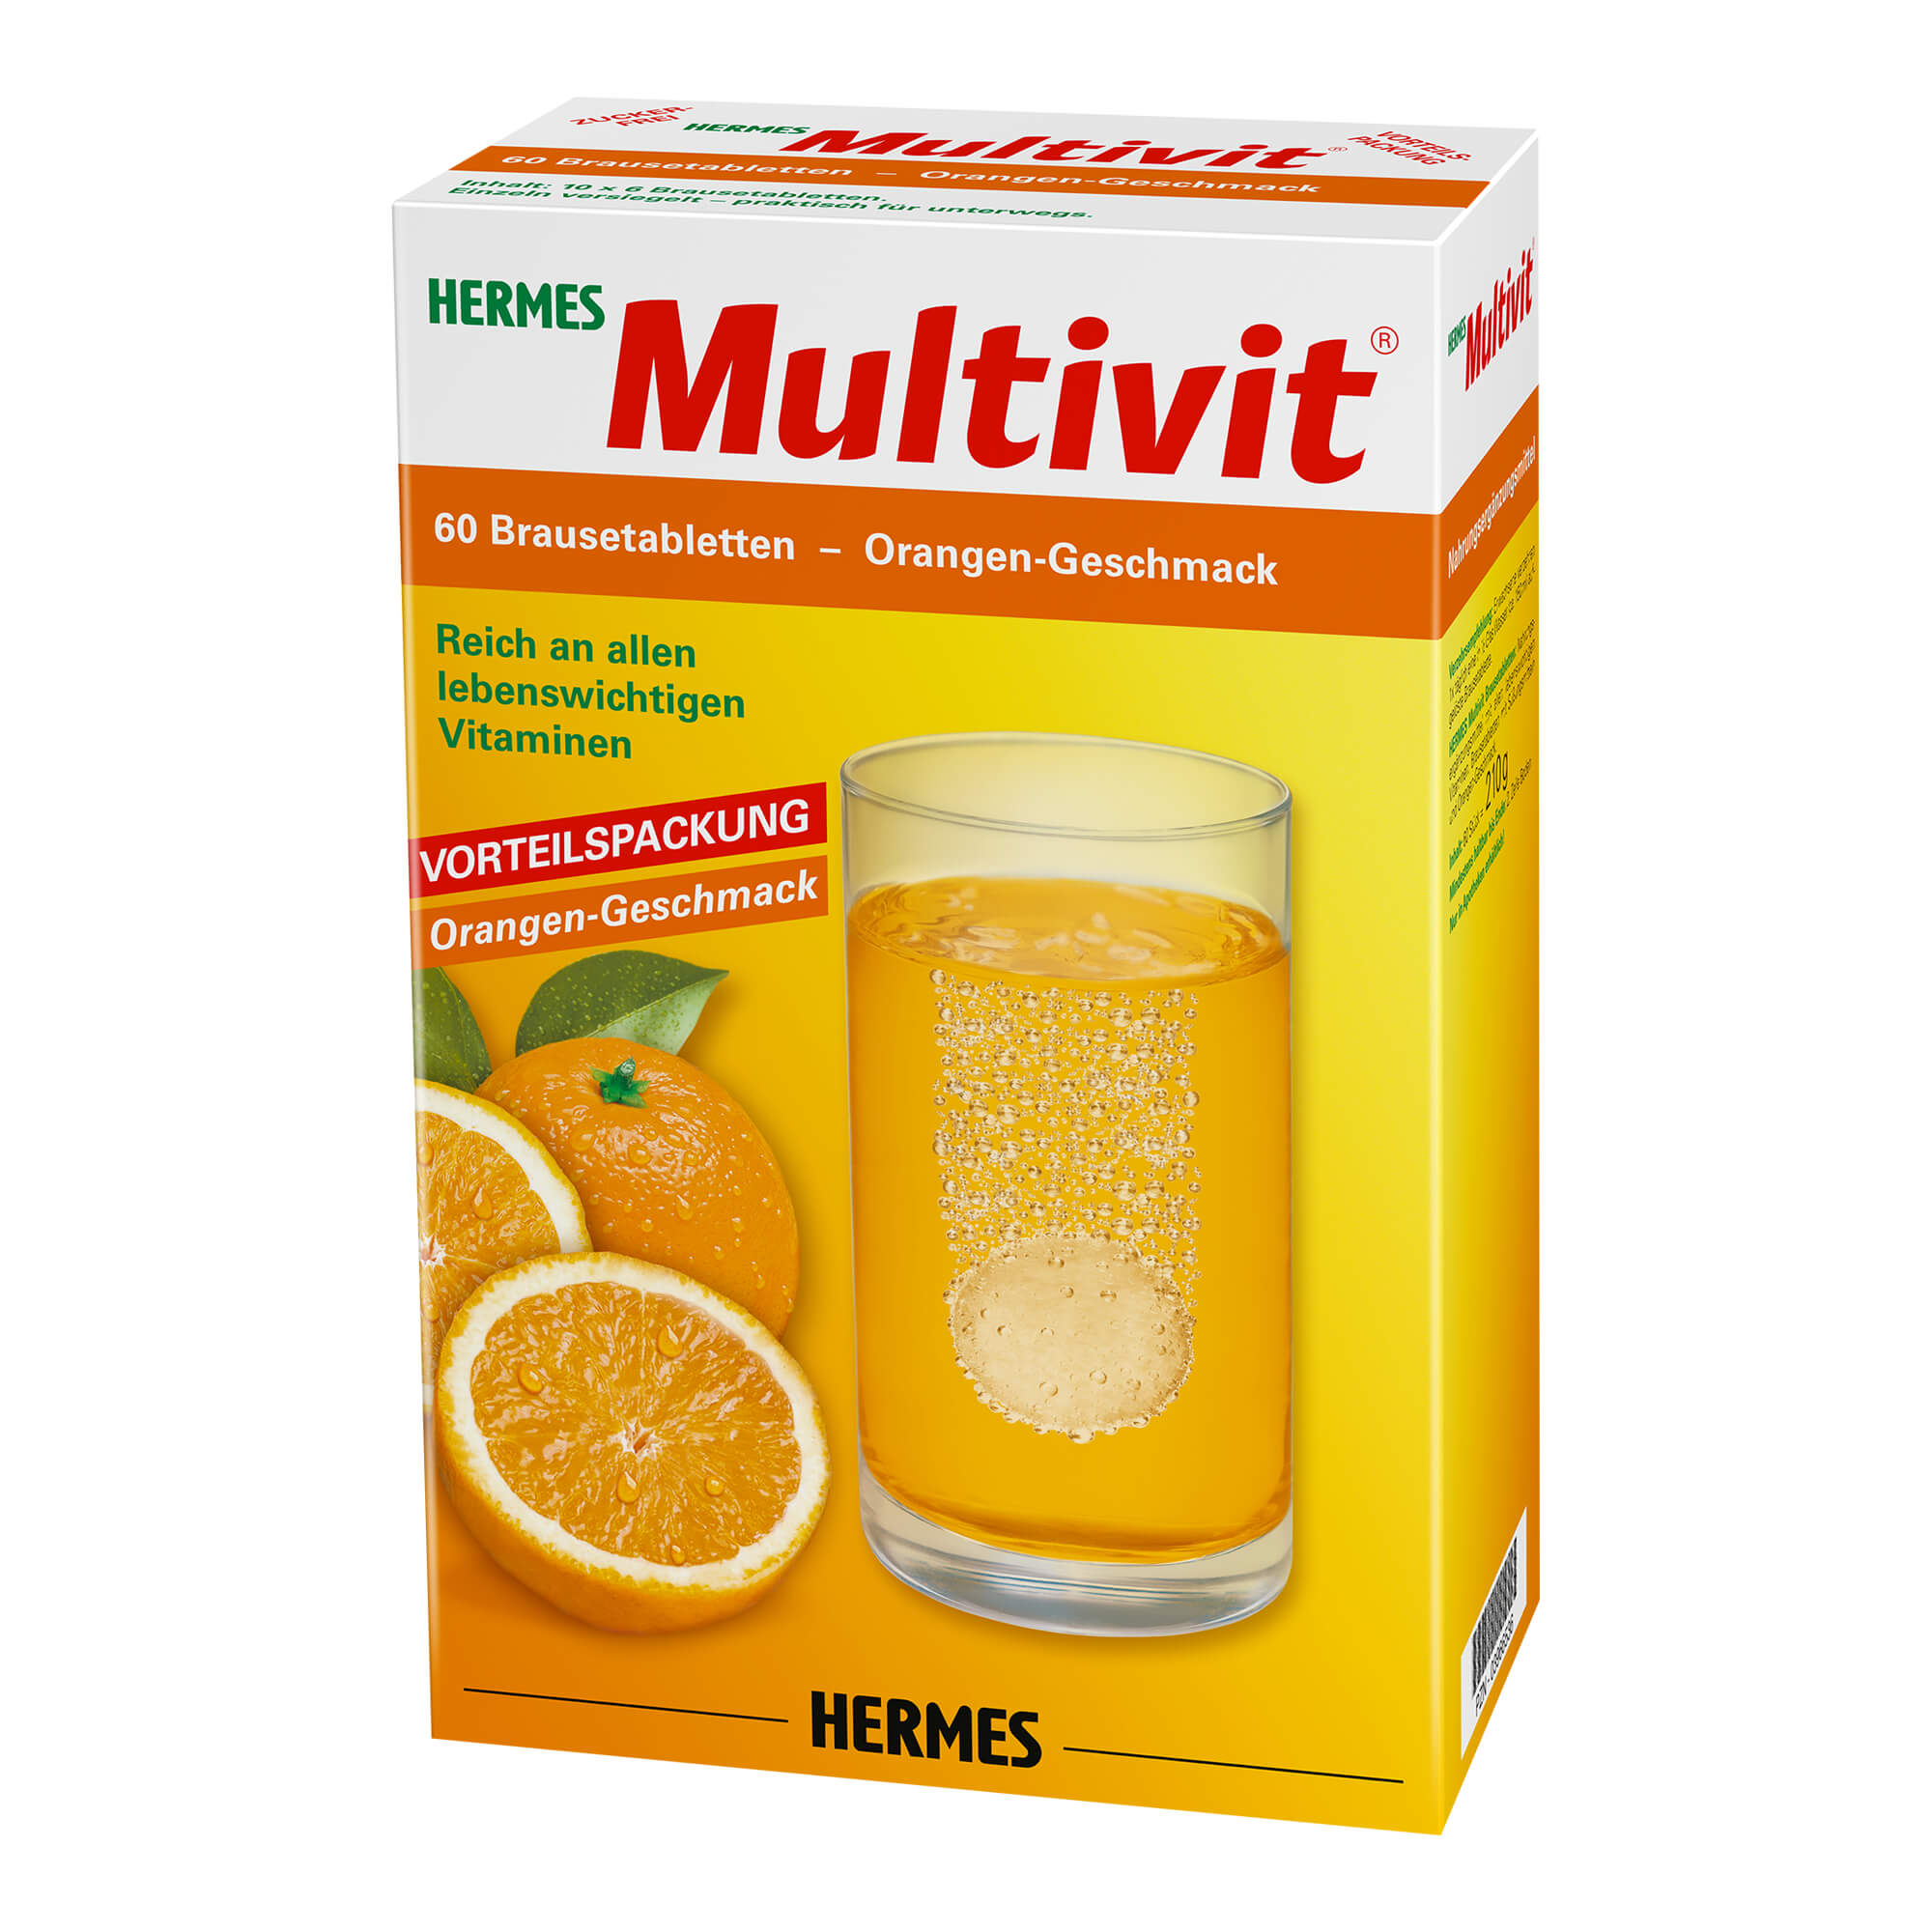 Nahrungsergänzungsmittel mit allen lebenswichtigen Vitaminen. Brausetabletten mit Orangen-Geschmack.